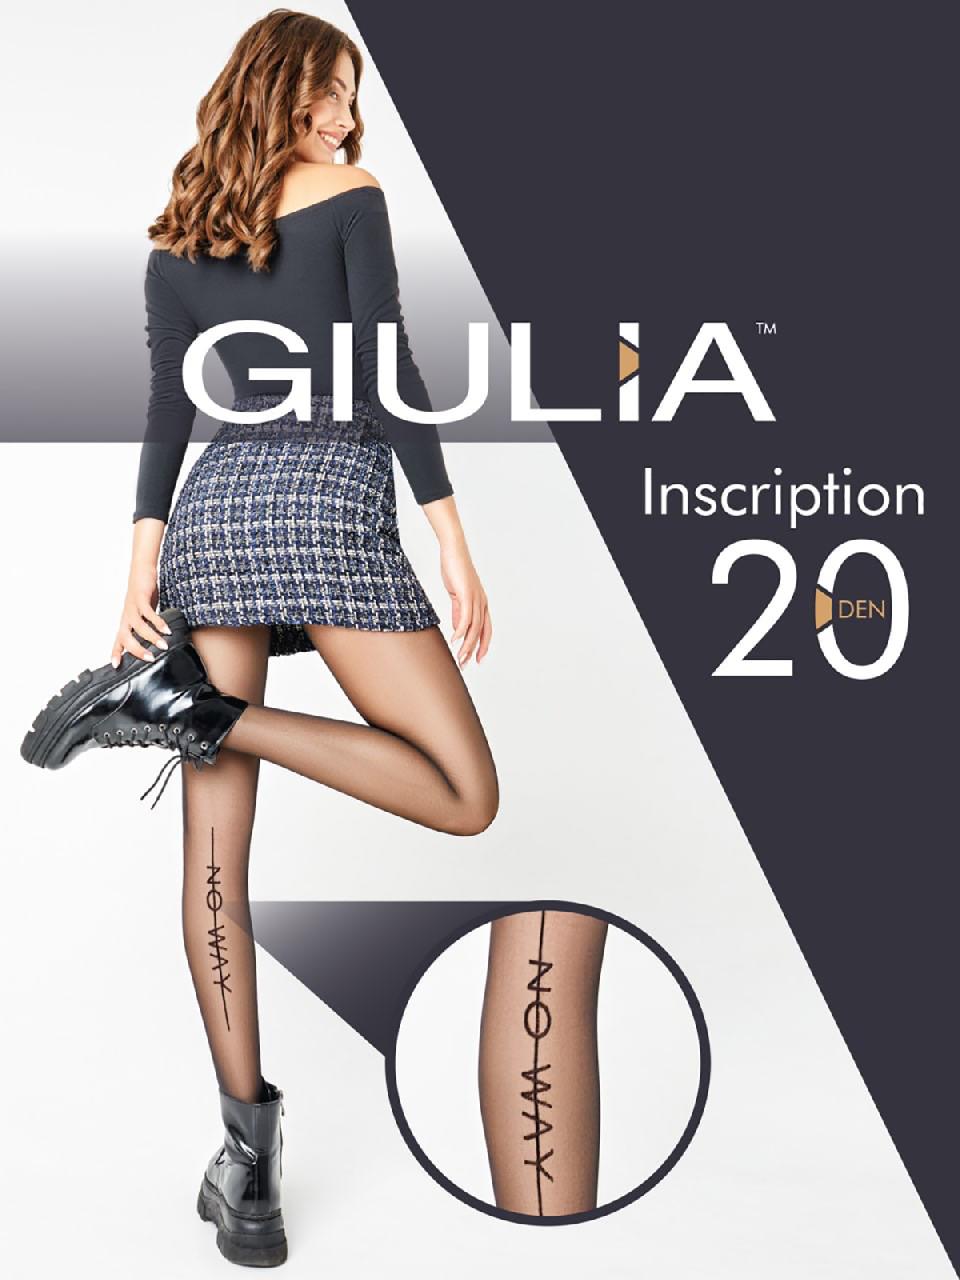 Giulia Inscription 01 nero 2